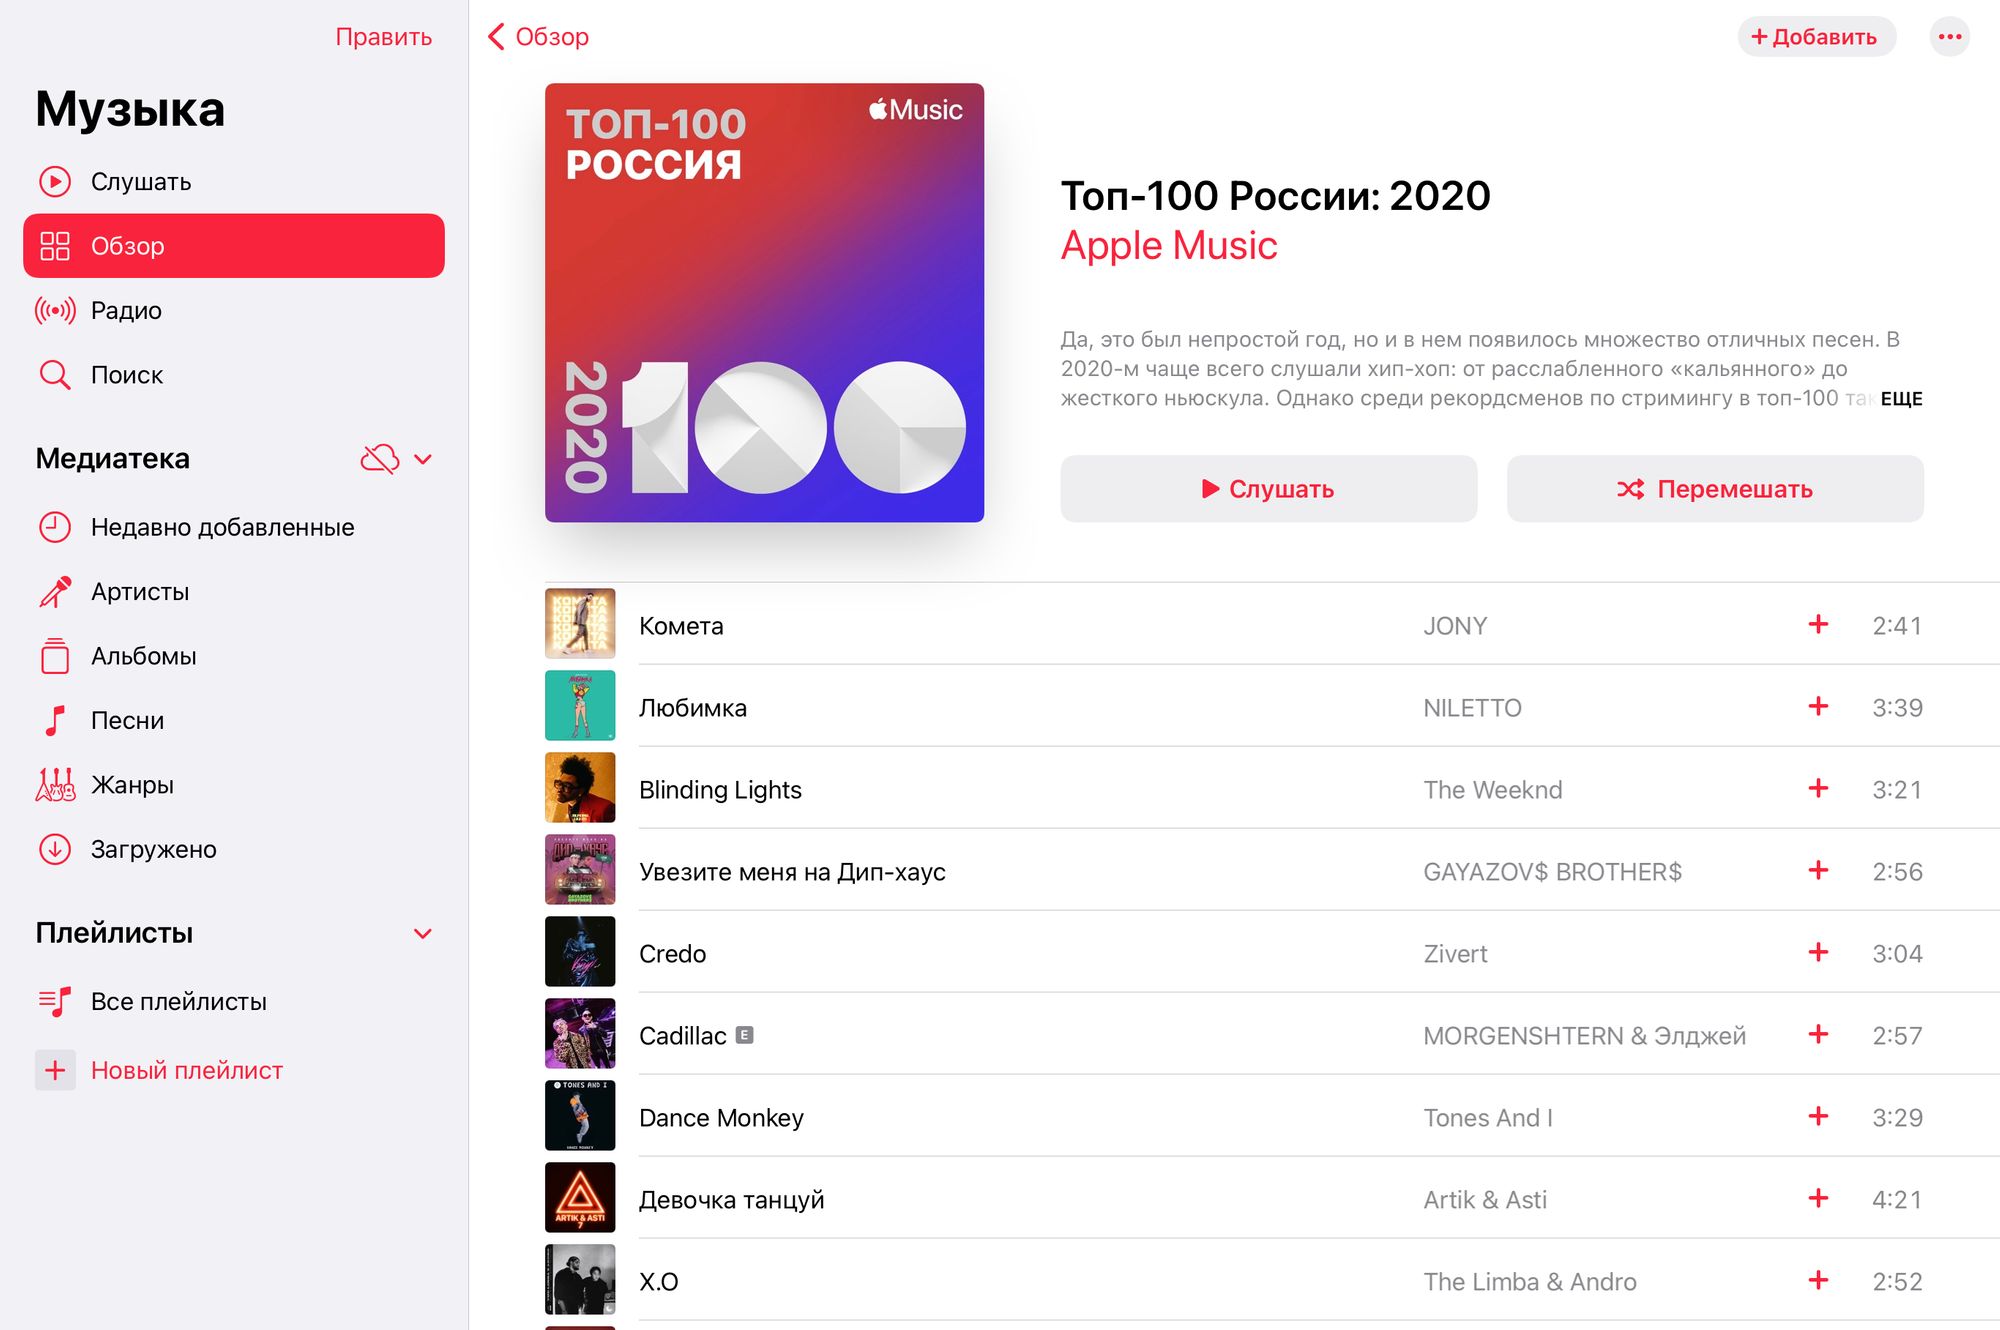 Песни которые вышли сегодня. Итоги года в Apple Music. Статистика Apple Music. Самая популярная песня 2020. Самые популярные песни в 2020.